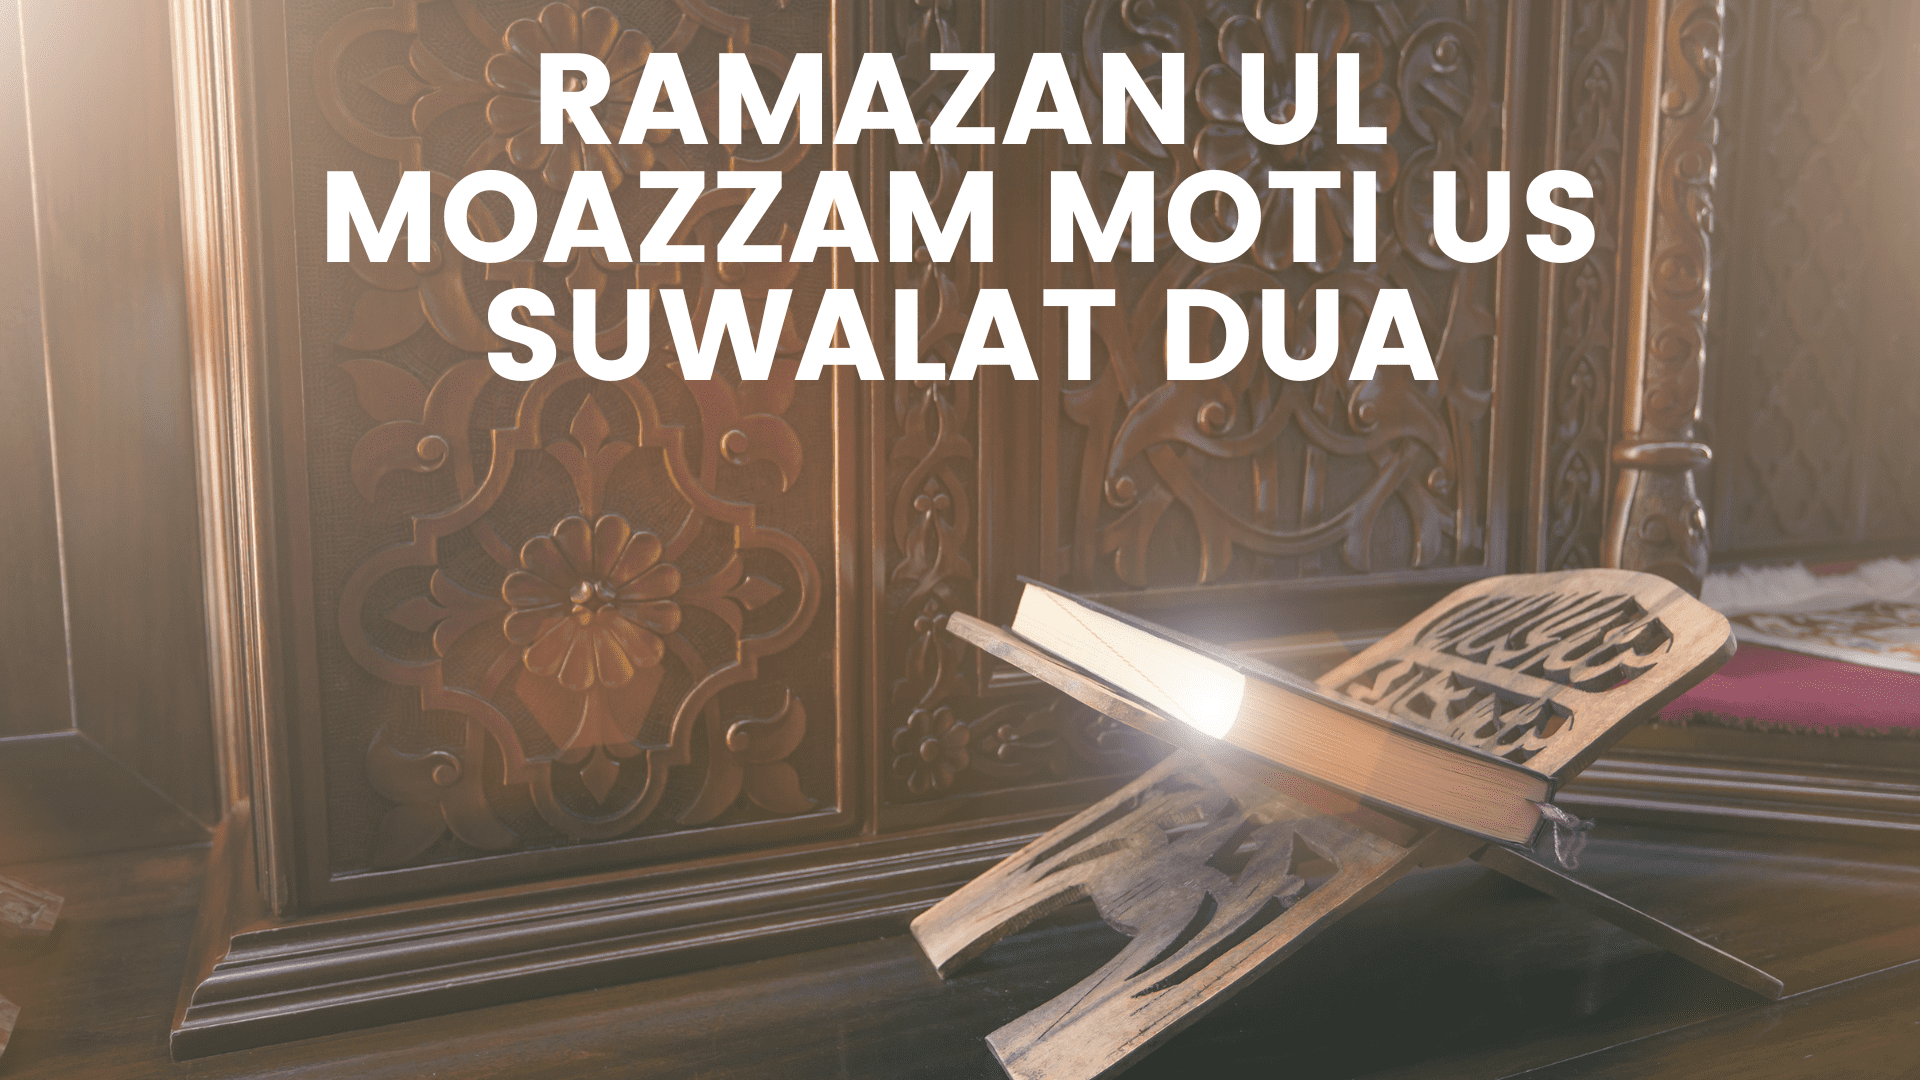 Ramazan ul Moazzam Moti us Suwalat Dua